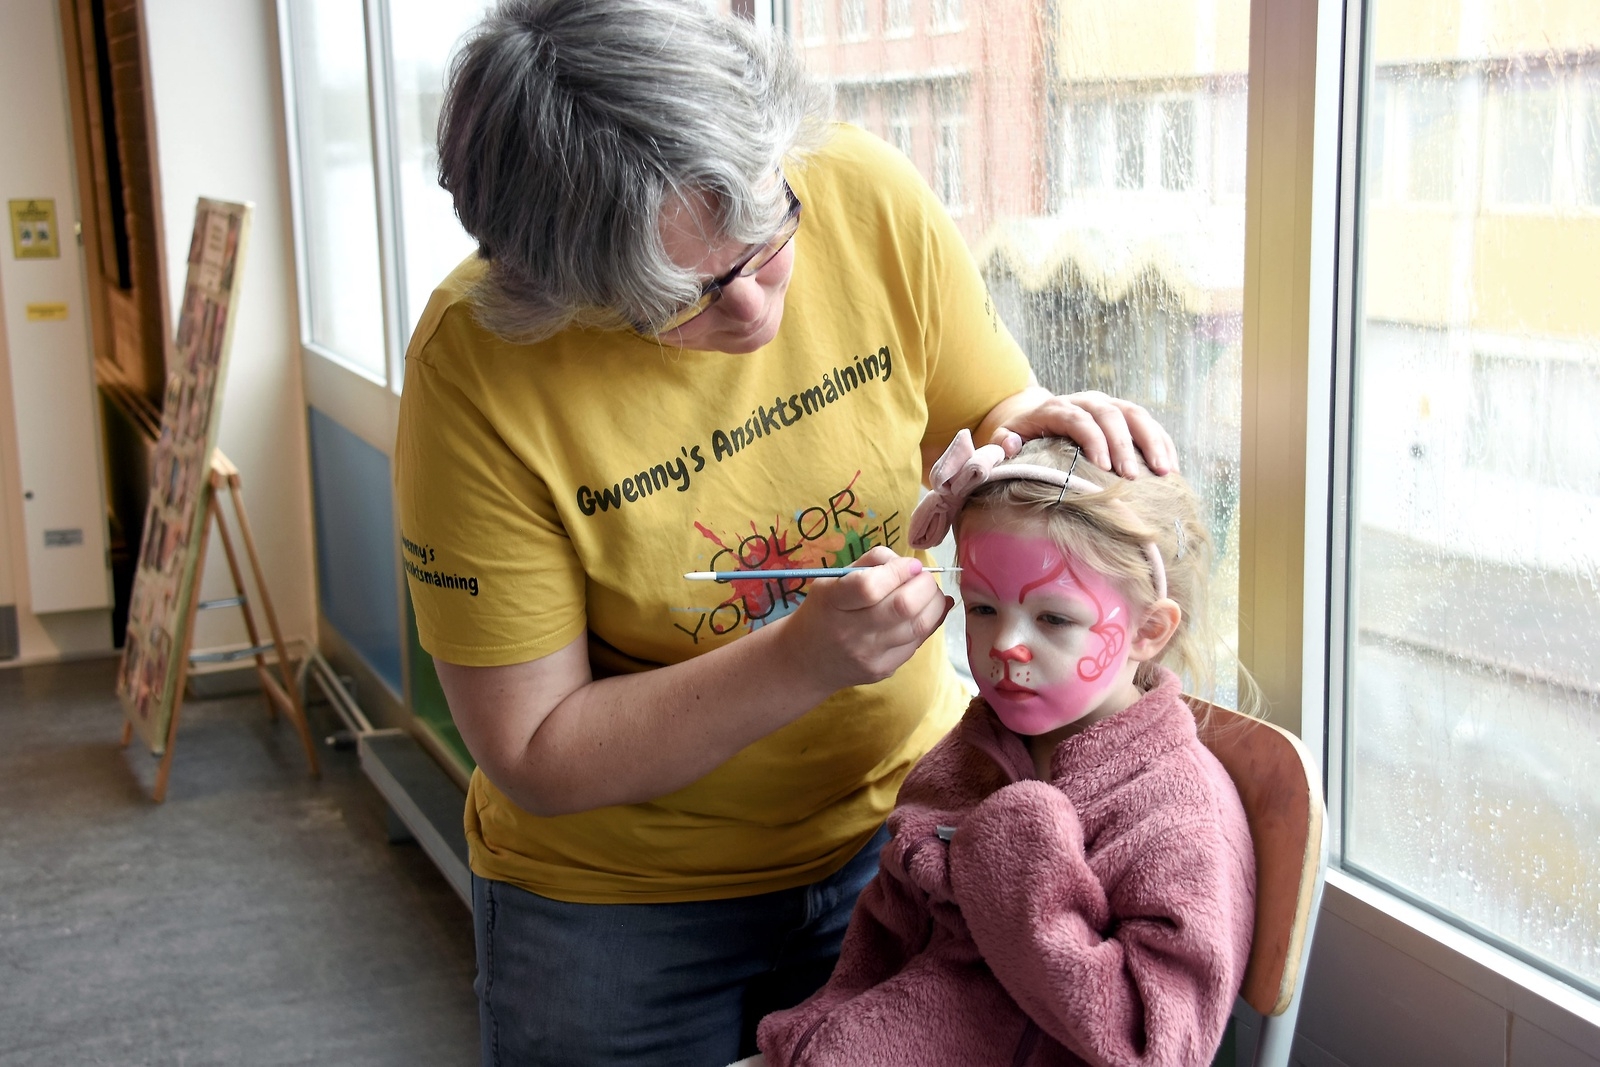 Gwenny van Dooren som är professionell ansiktsmålare målade lilla Tuva till en rosa katt. Foto: Helén Fingalsson